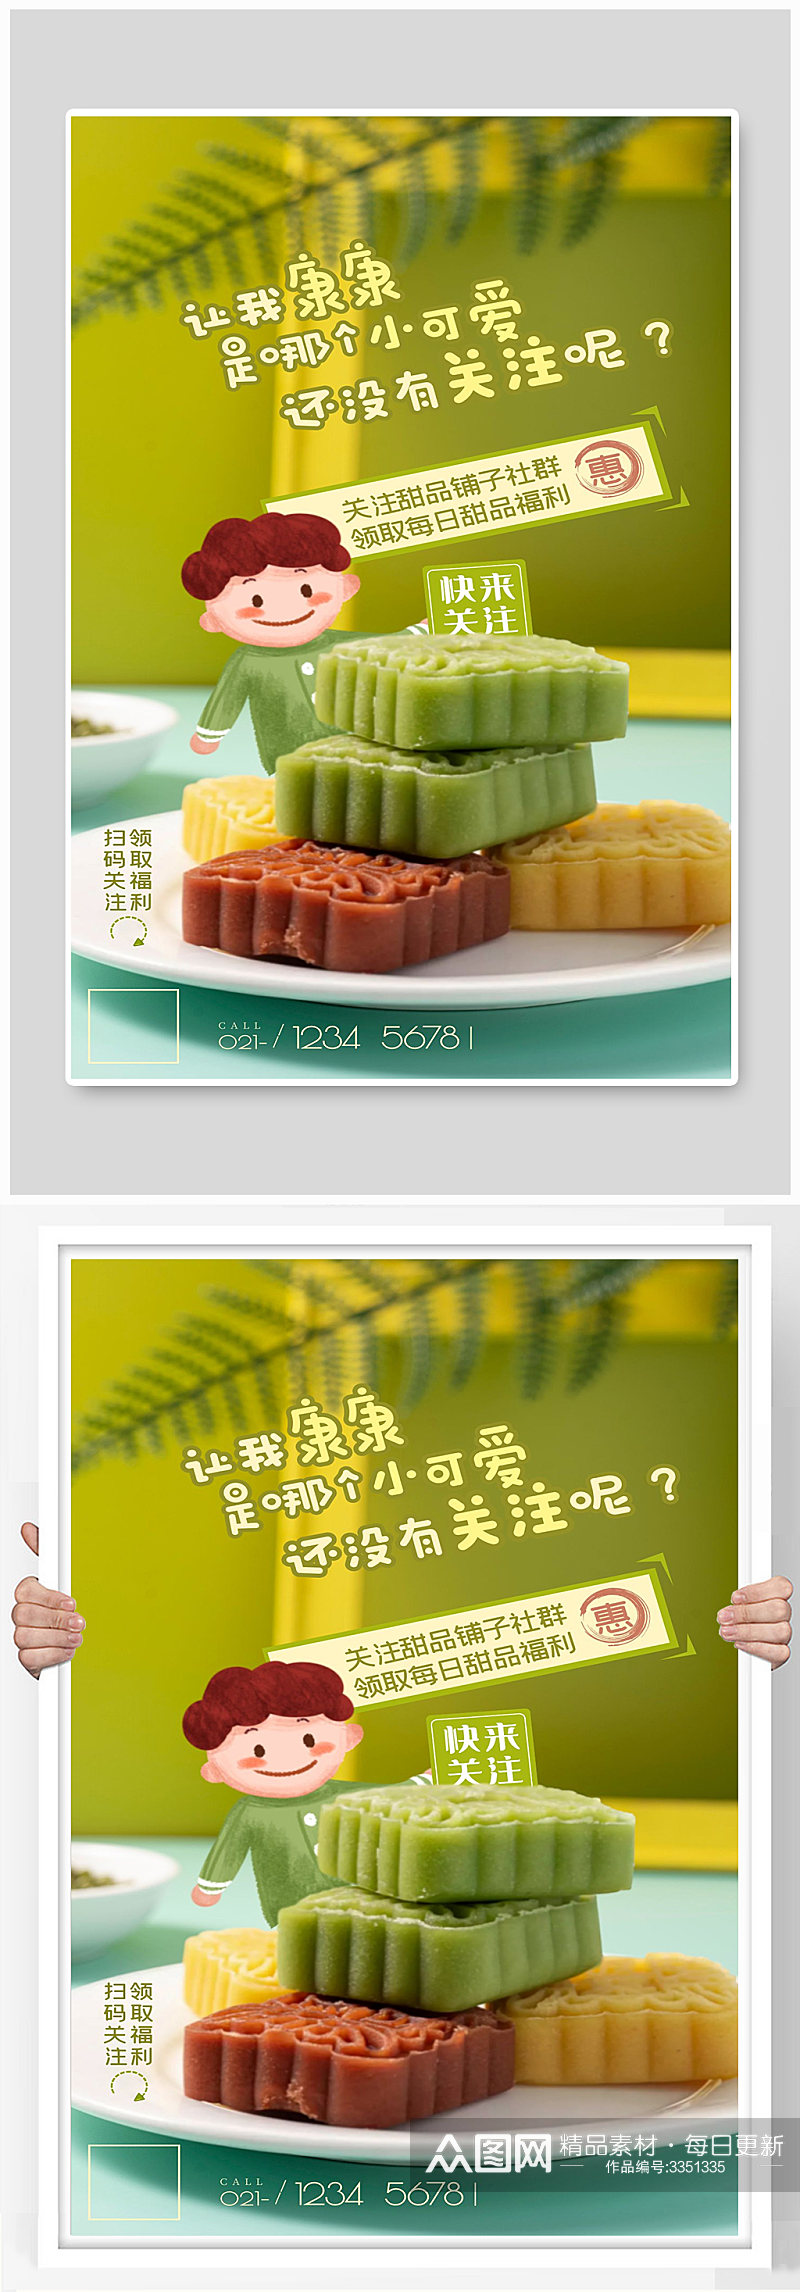 甜品每日福利绿豆糕美食甜点宣传海报素材